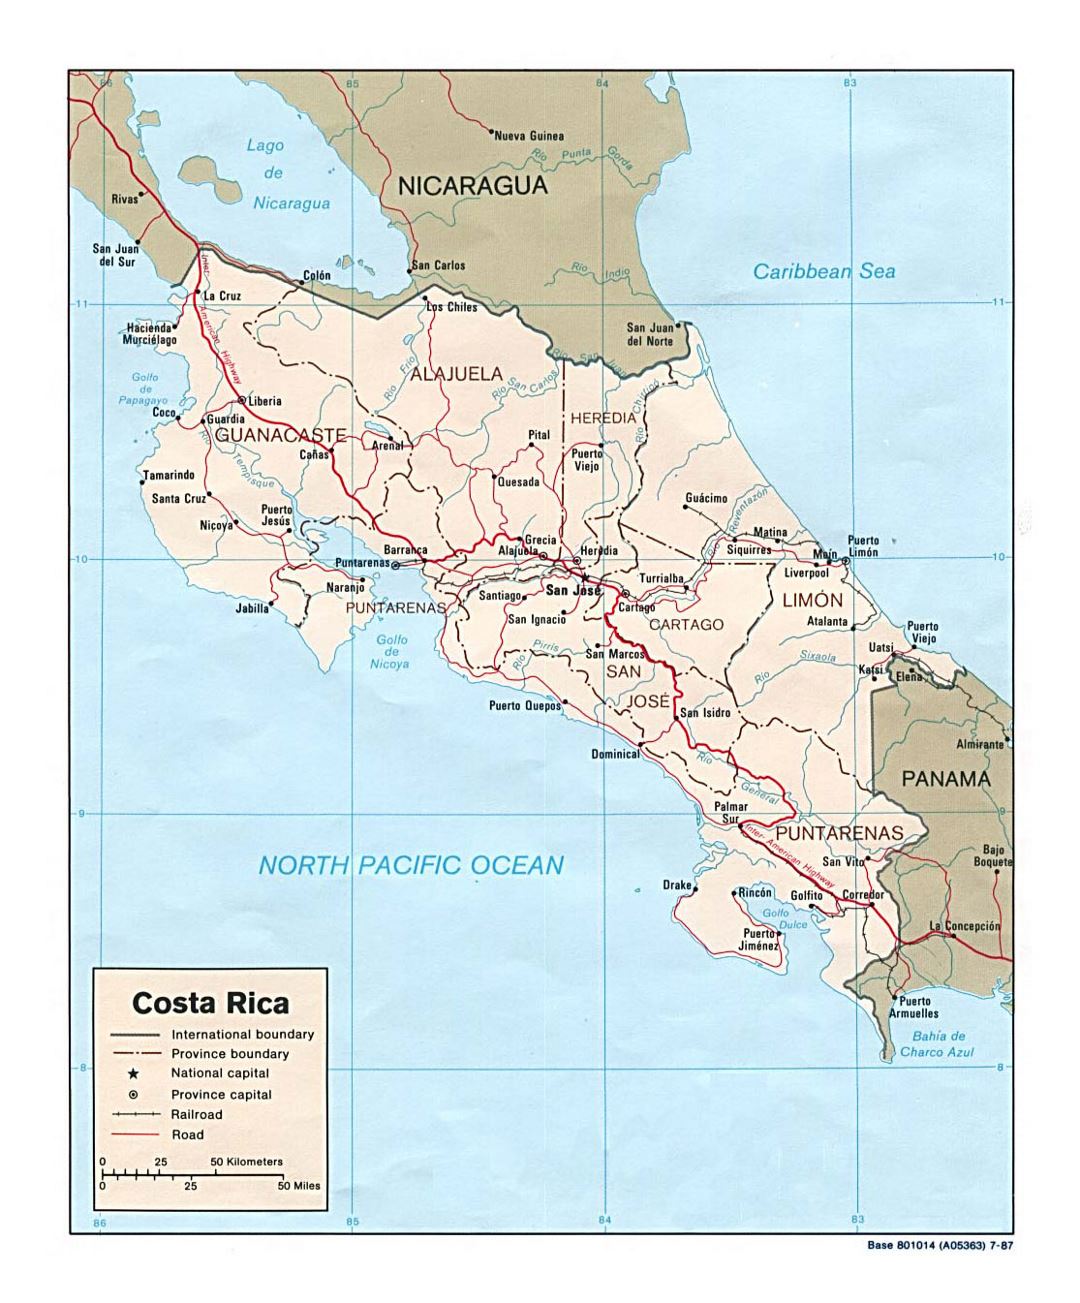 Подробная политическая и административная карта Коста-Рики с дорогами, железными дорогами и крупными городами - 1987